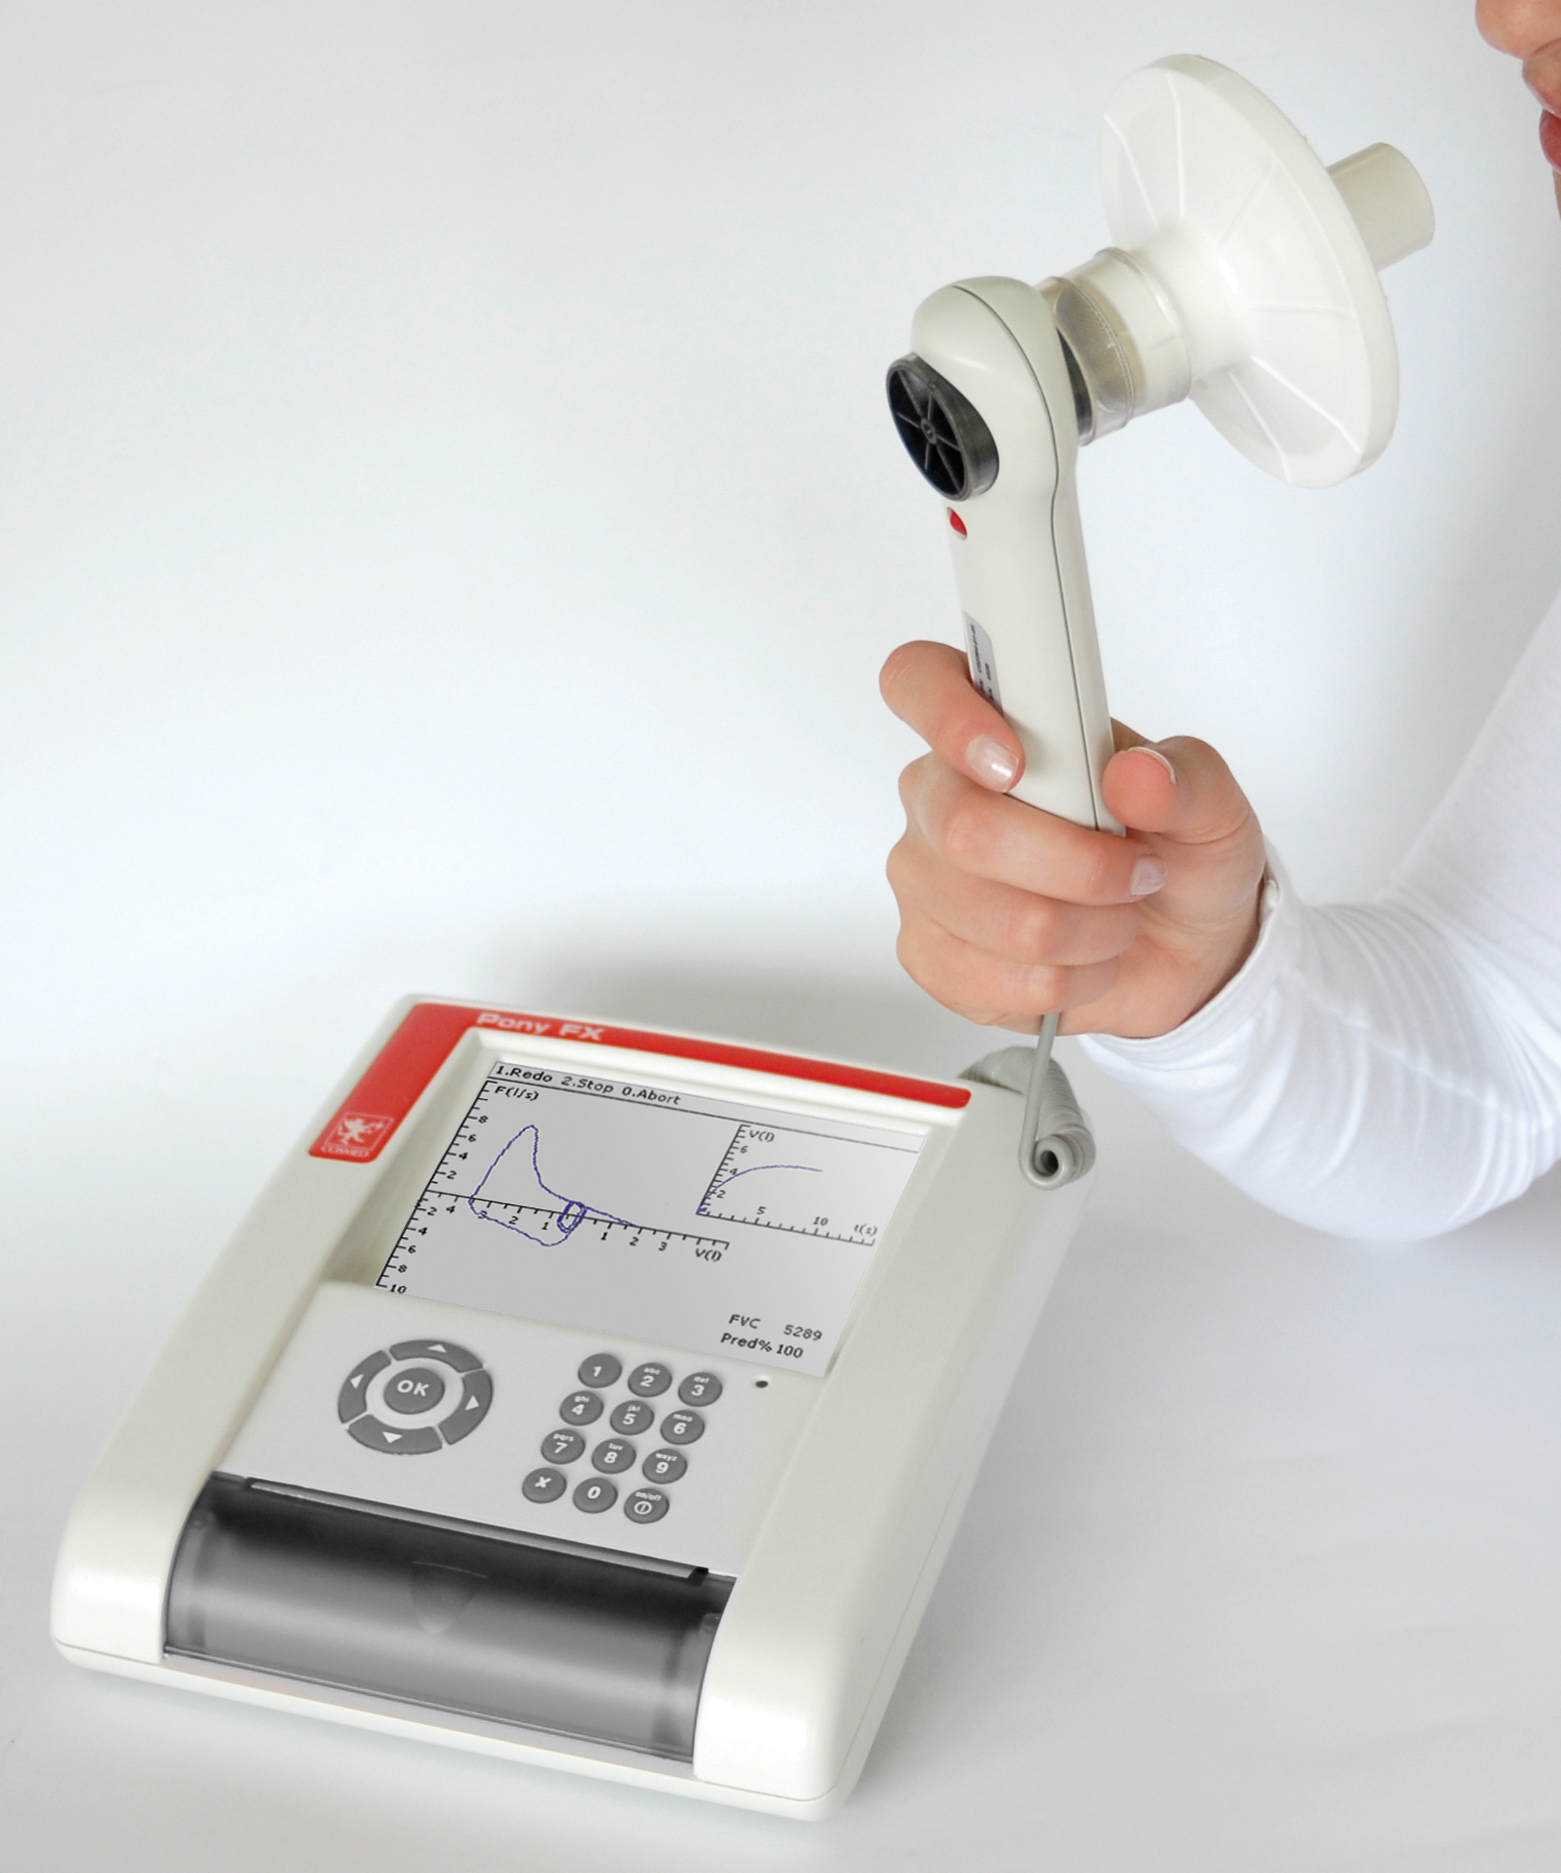 Handheld spirometry device